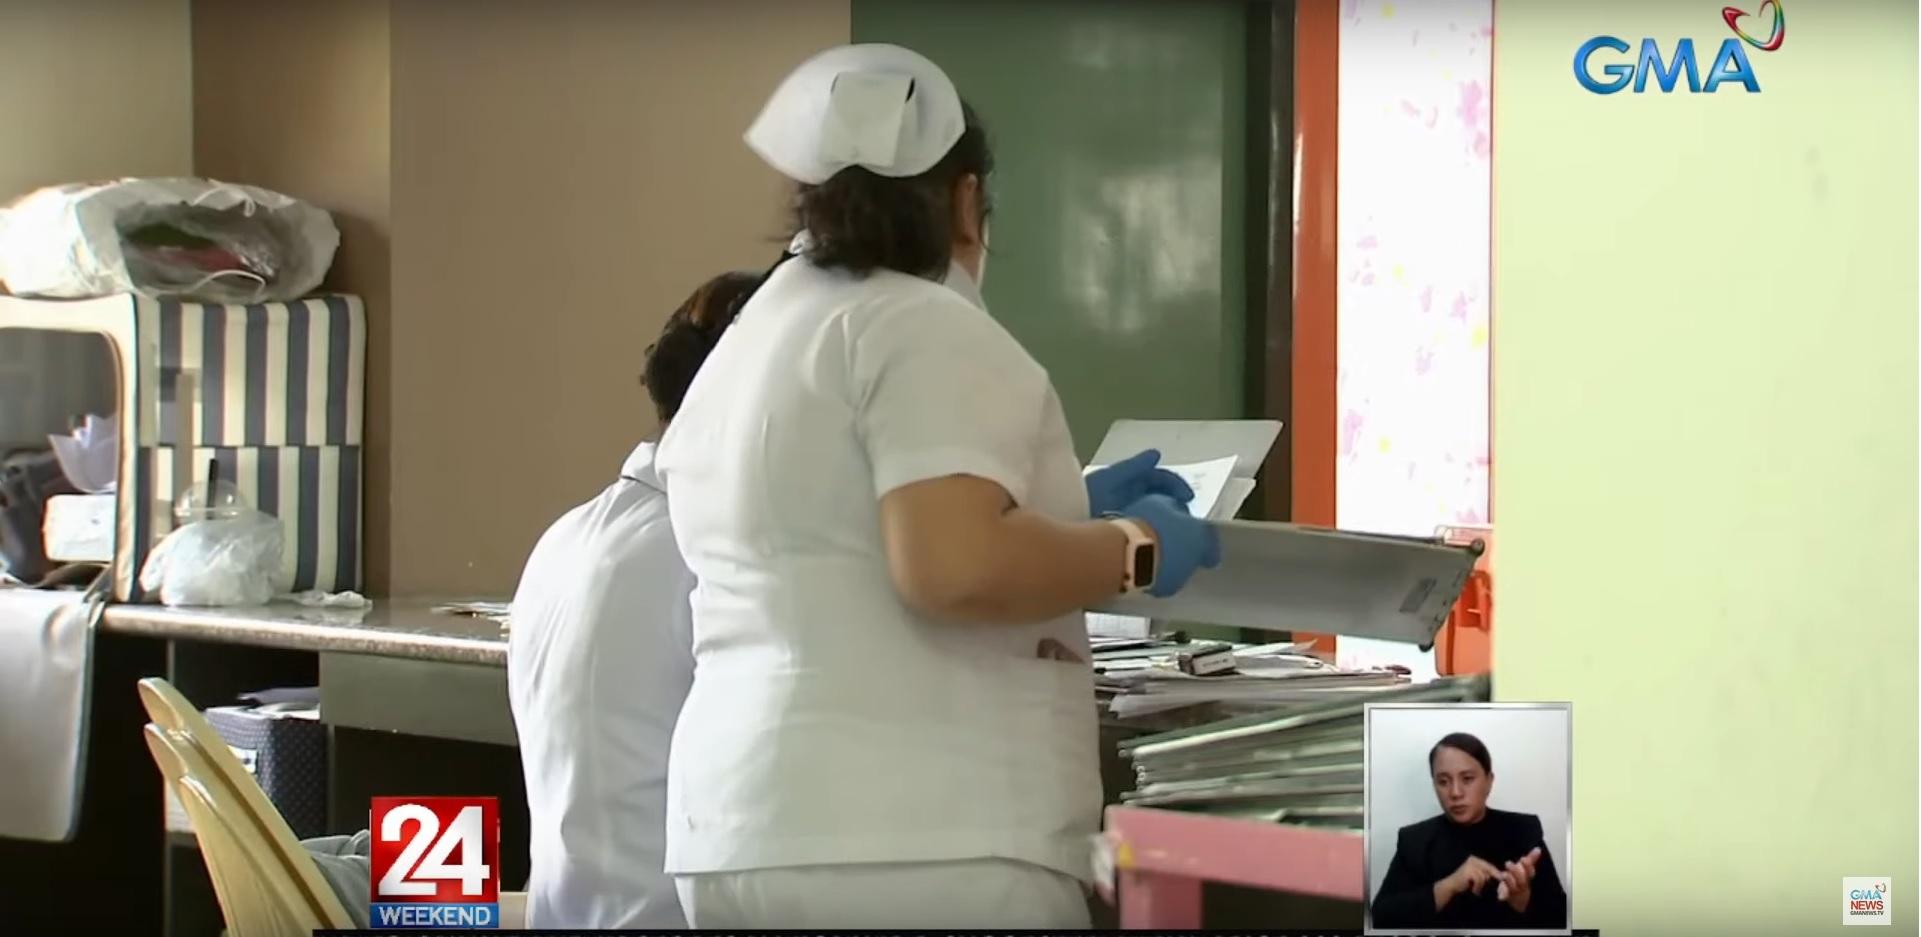 Kelompok perawat mencari gaji rumah sakit publik dan swasta yang seimbang Berita GMA Online